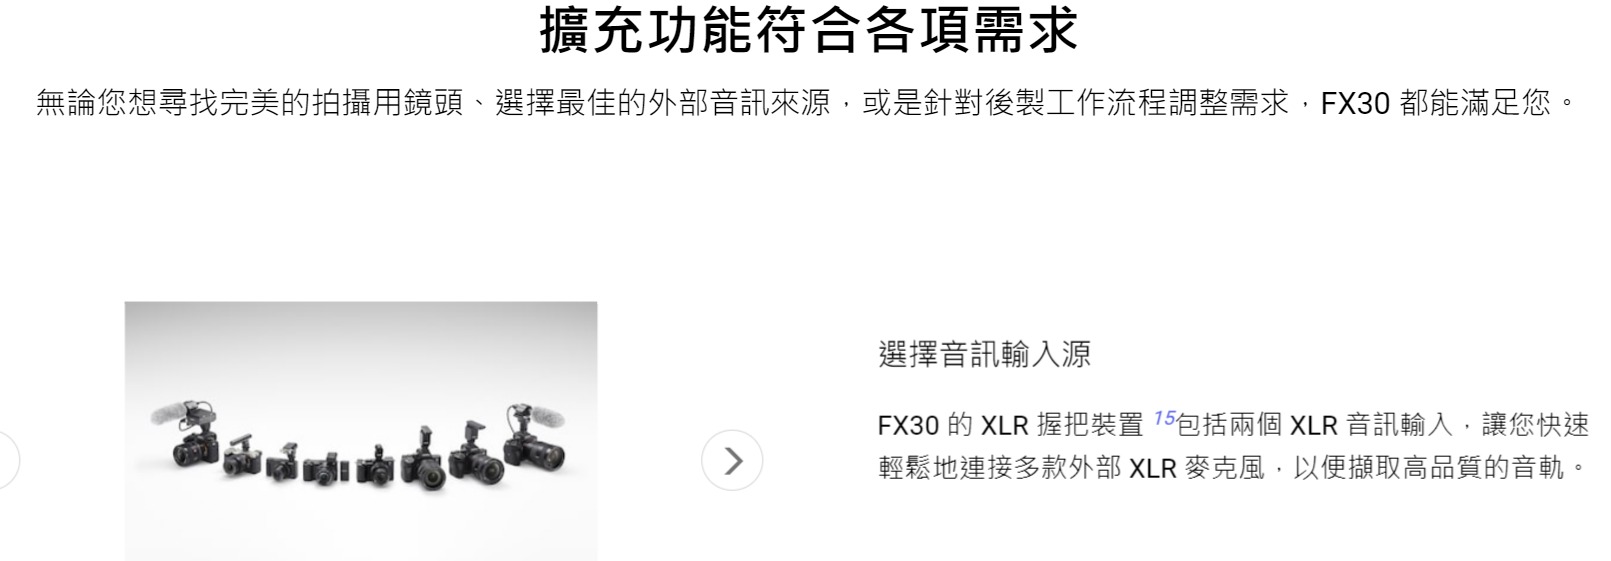 擴充功能符合各項需求無論您想尋找完美的拍攝用鏡頭、選擇最佳的外部音訊來源,或是針對後製工作流程調整需求,FX30 都能滿足您。選擇音訊輸入源FX30 的 XLR 握把裝置 包括兩個 XLR 音訊輸入,讓您快速輕鬆地連接多款外部XLR 麥克風,以便擷取高品質的音軌。